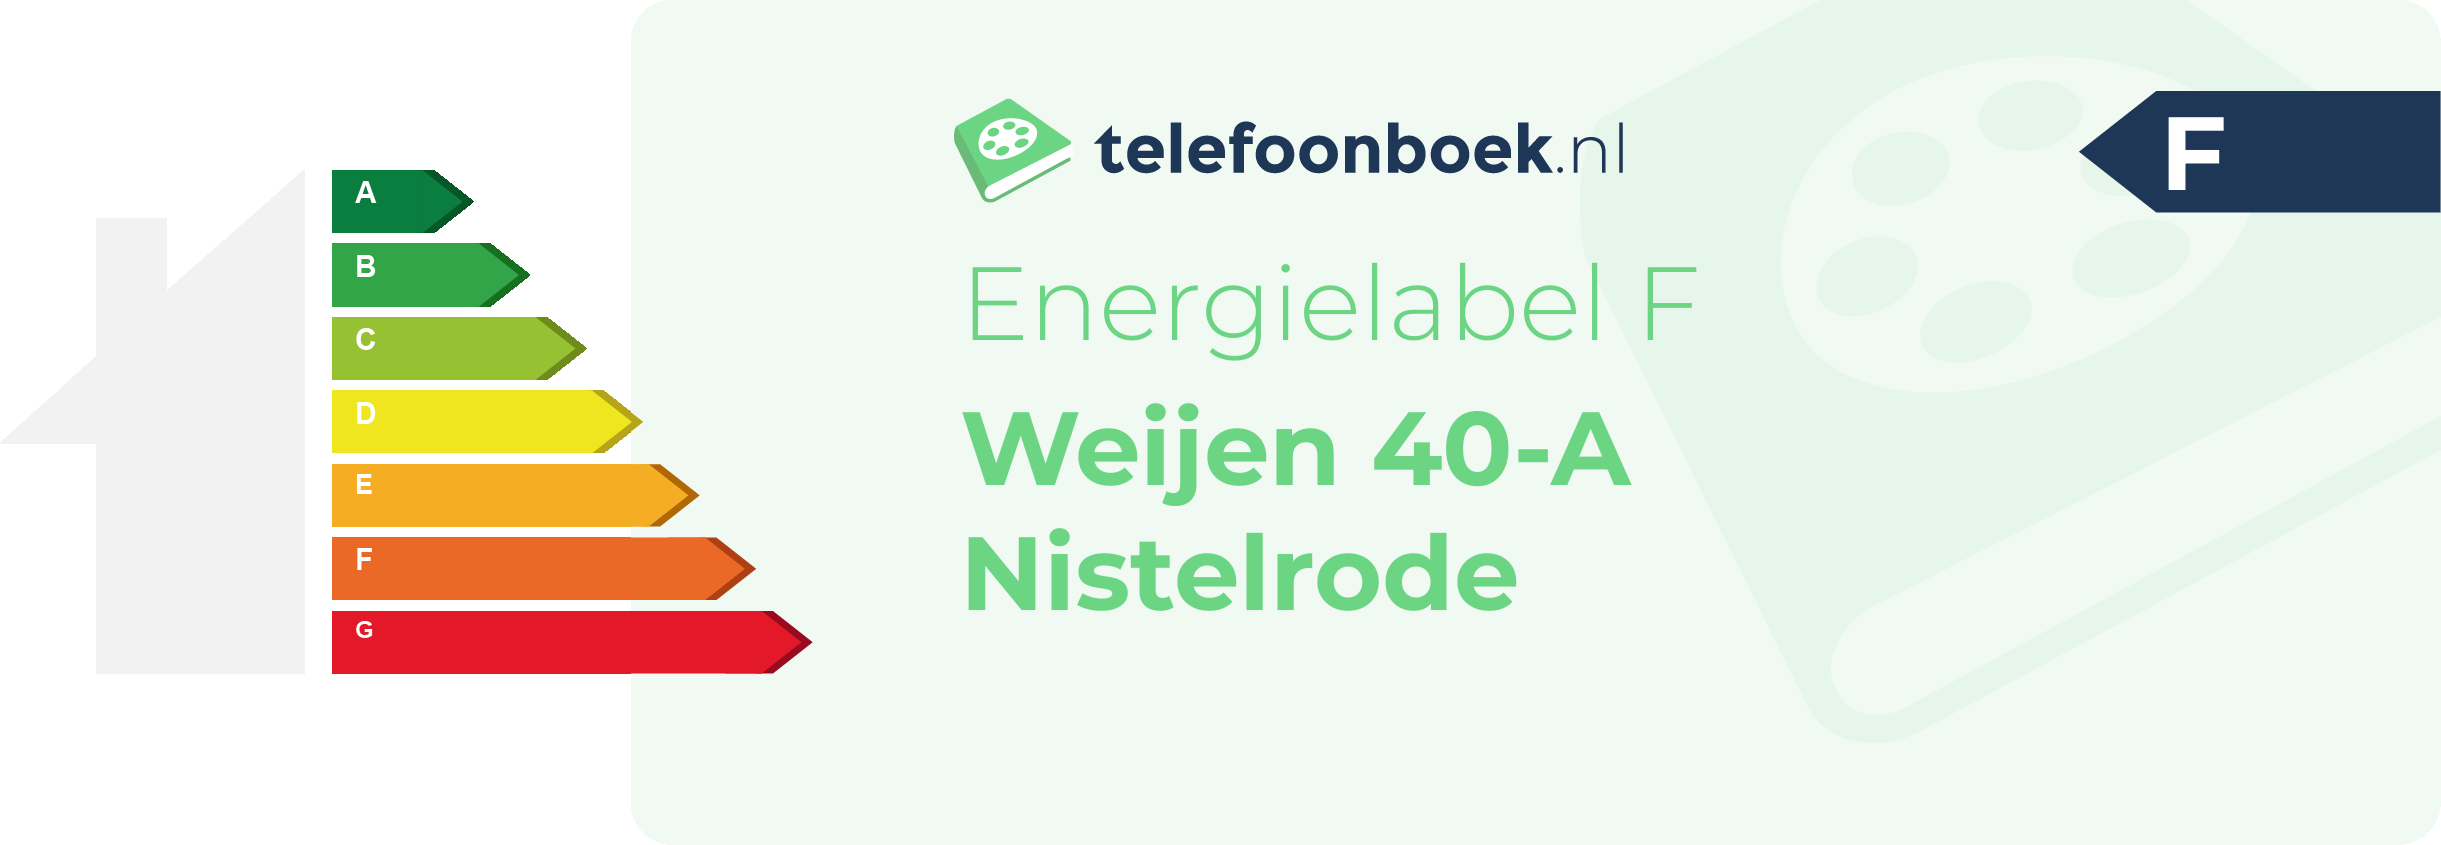 Energielabel Weijen 40-A Nistelrode